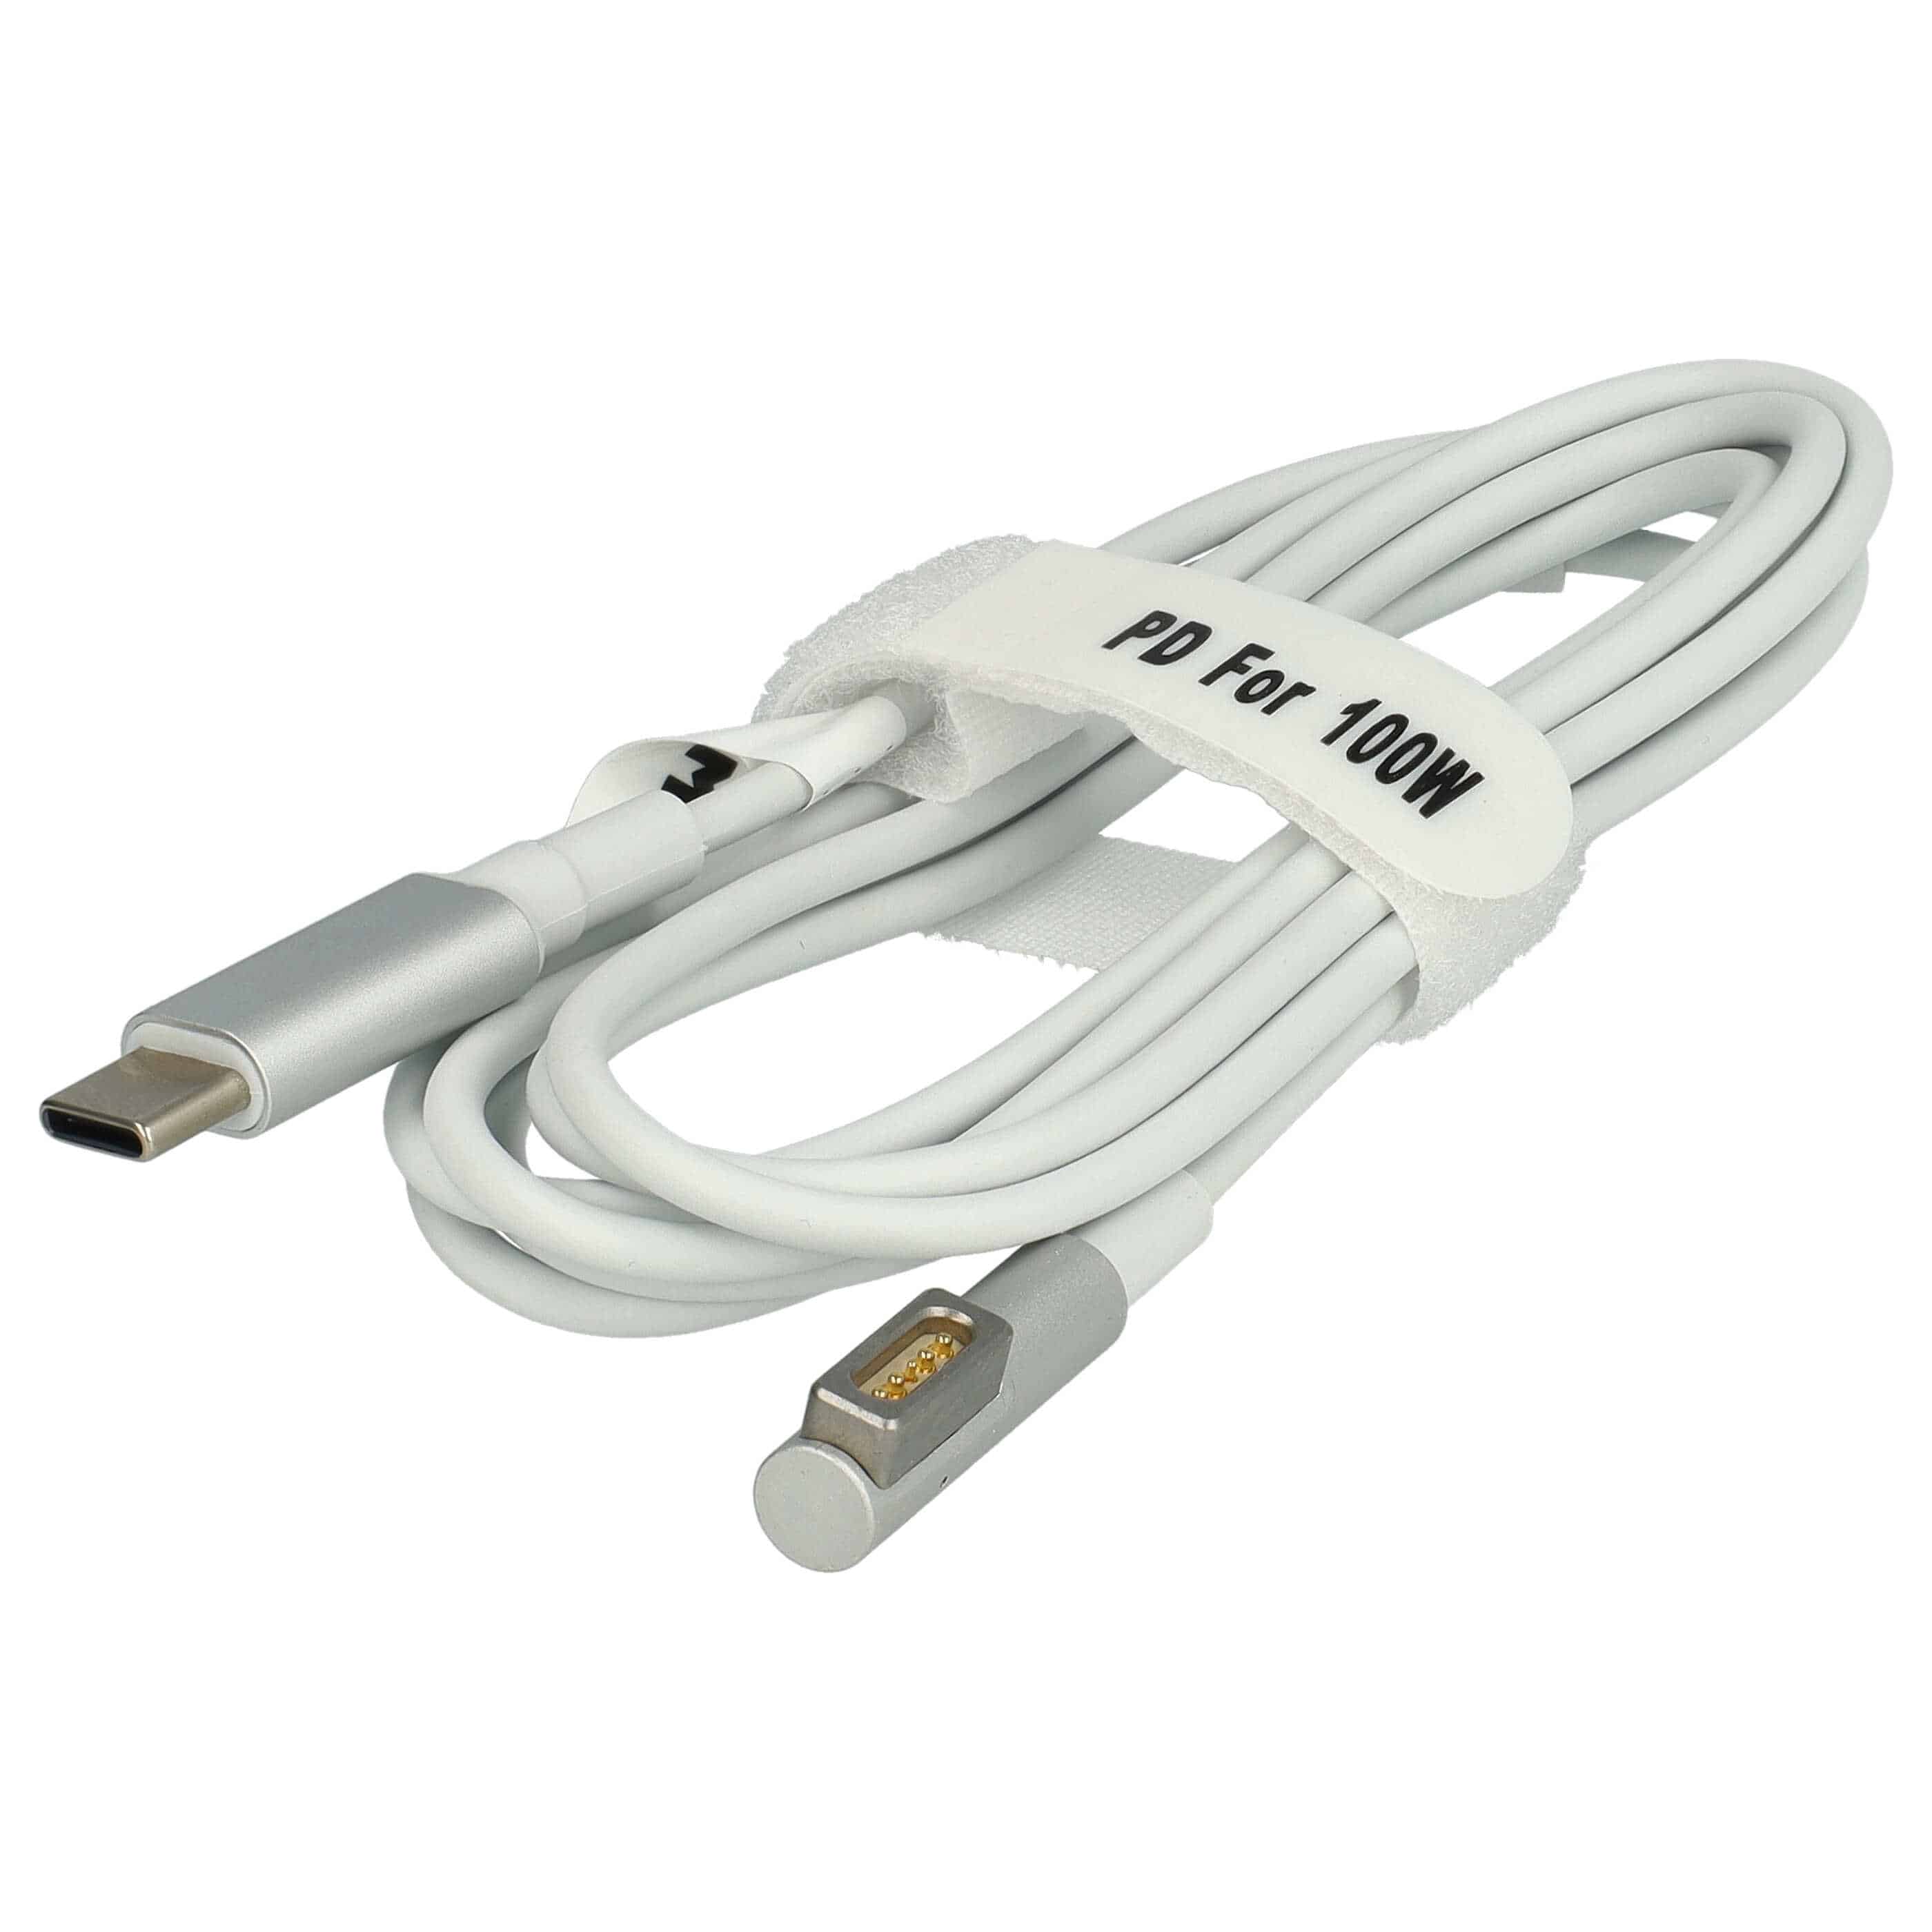 Adapterkabel USB Typ C auf MagSafe 1 als Ersatz für Apple ADA-C2MS1 für Apple Notebook - 100 W, PVC